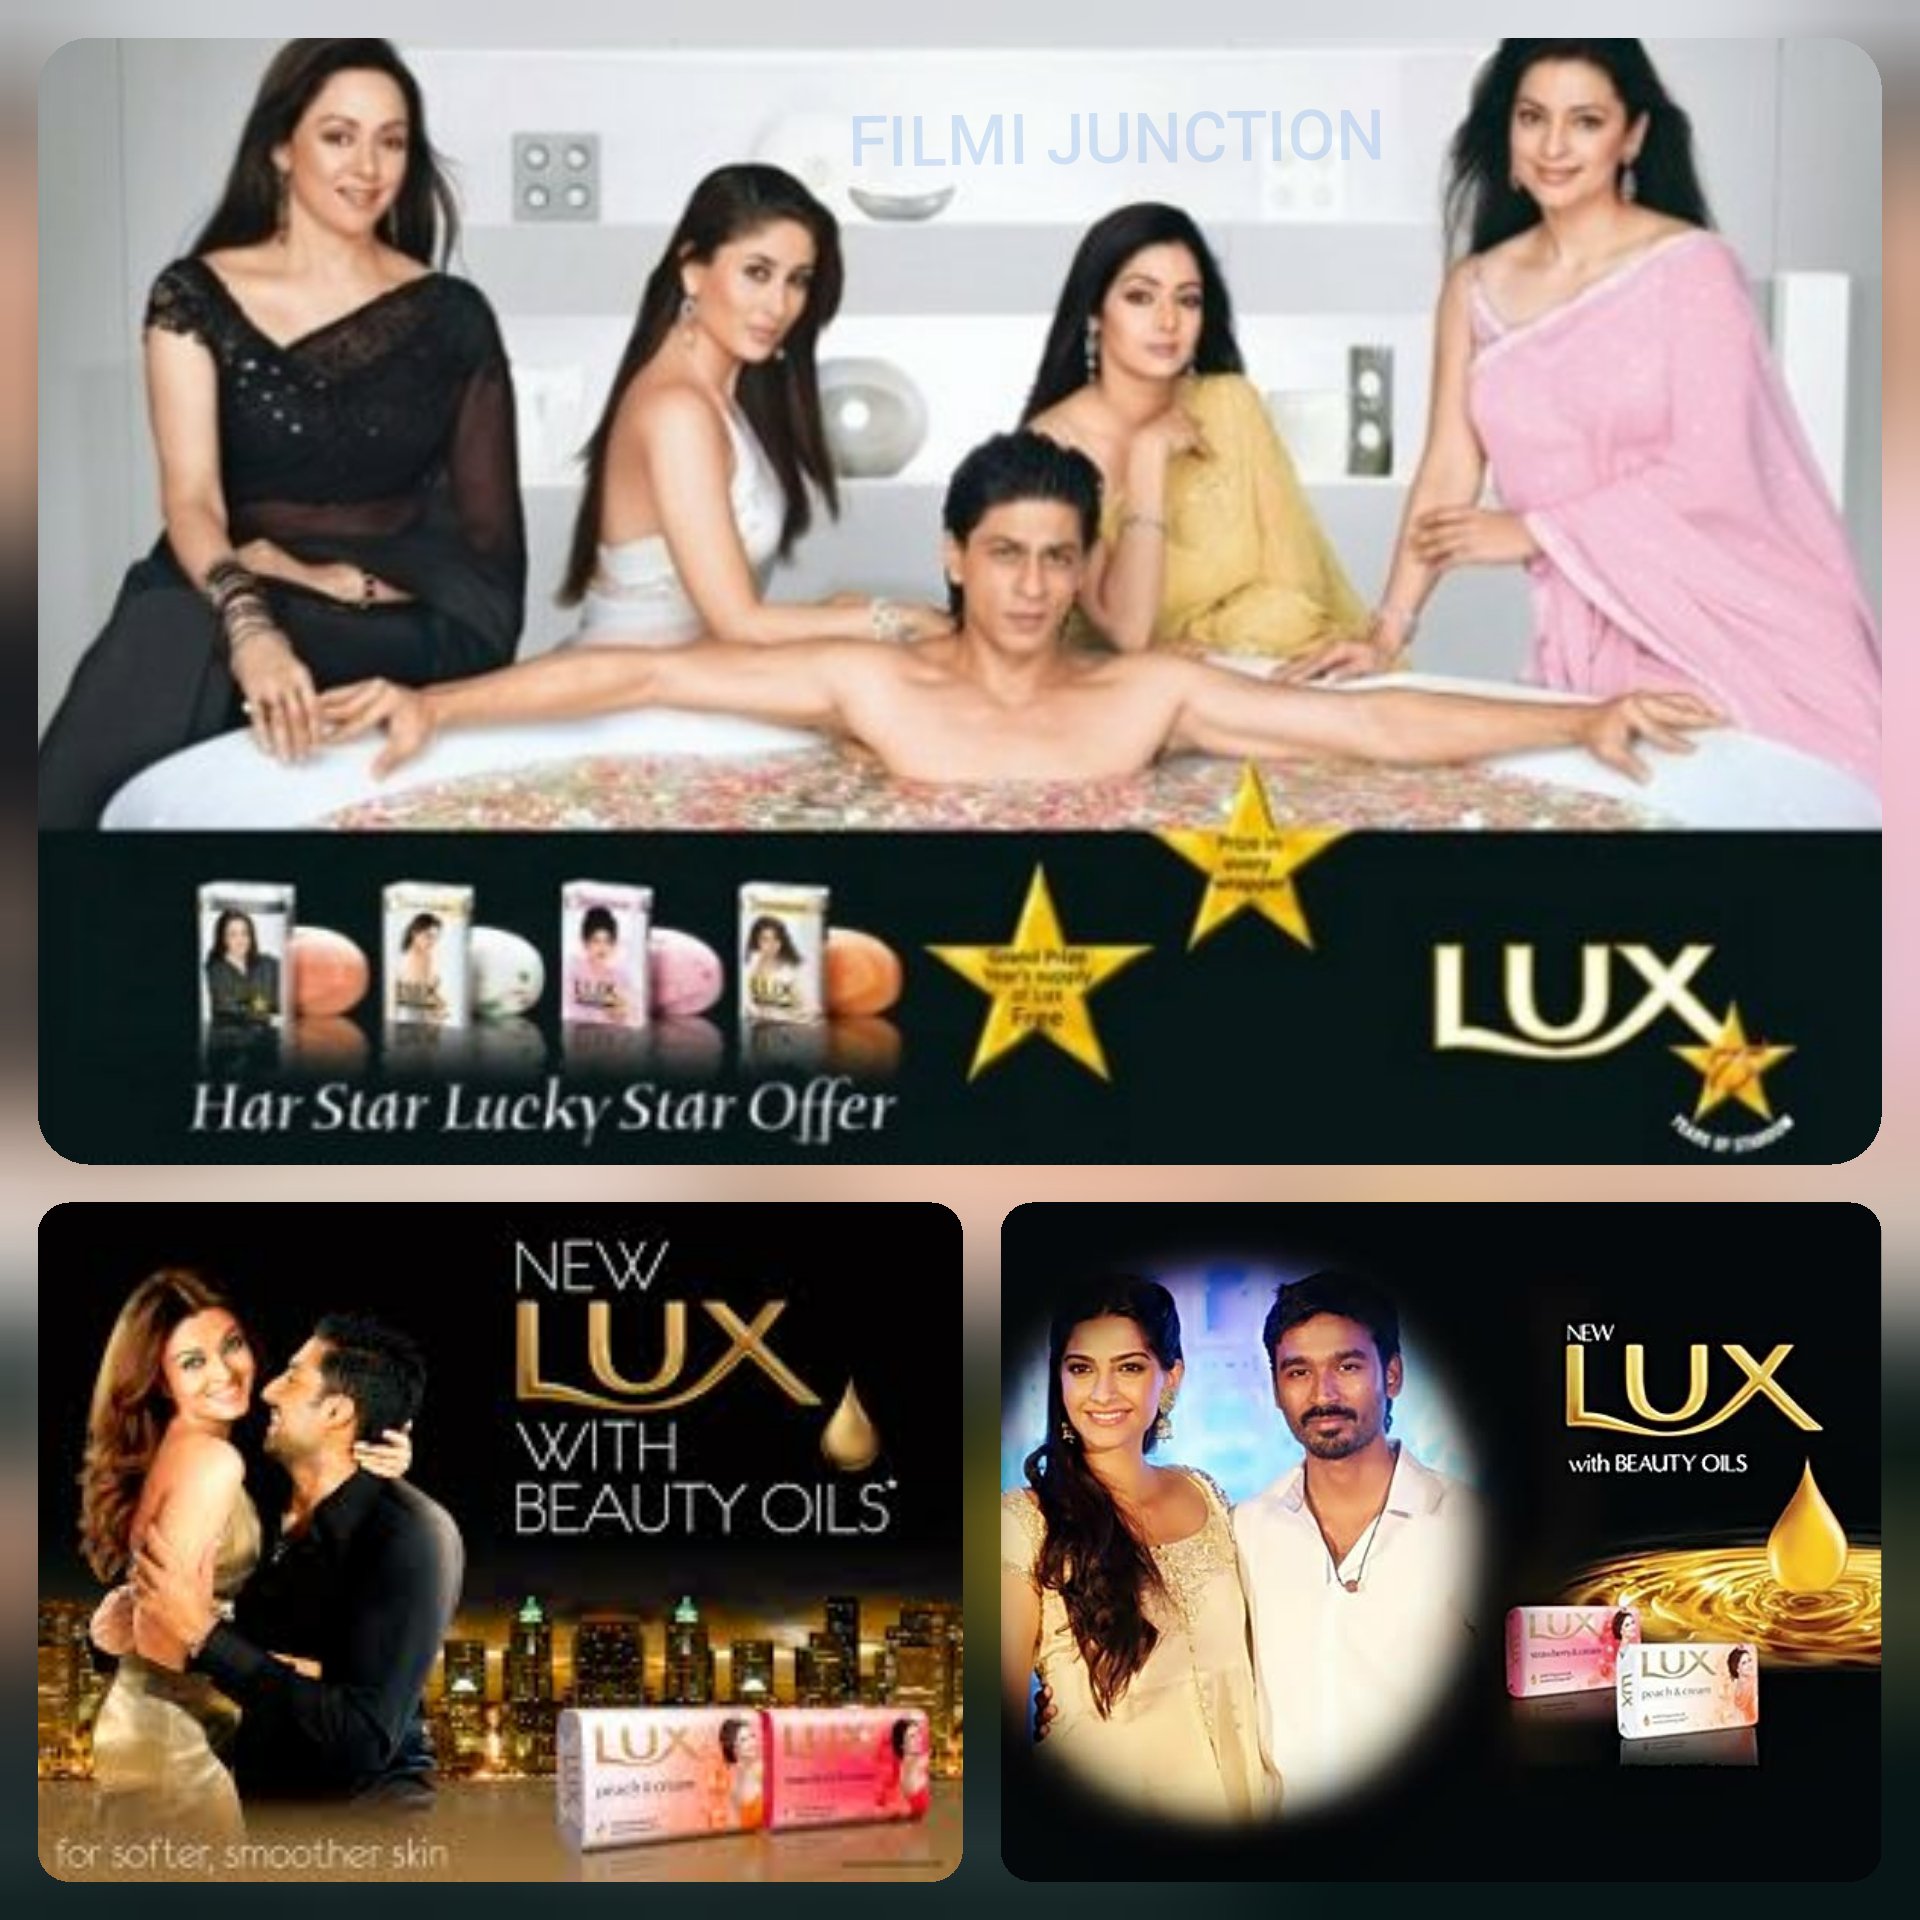 lux soap advertisement